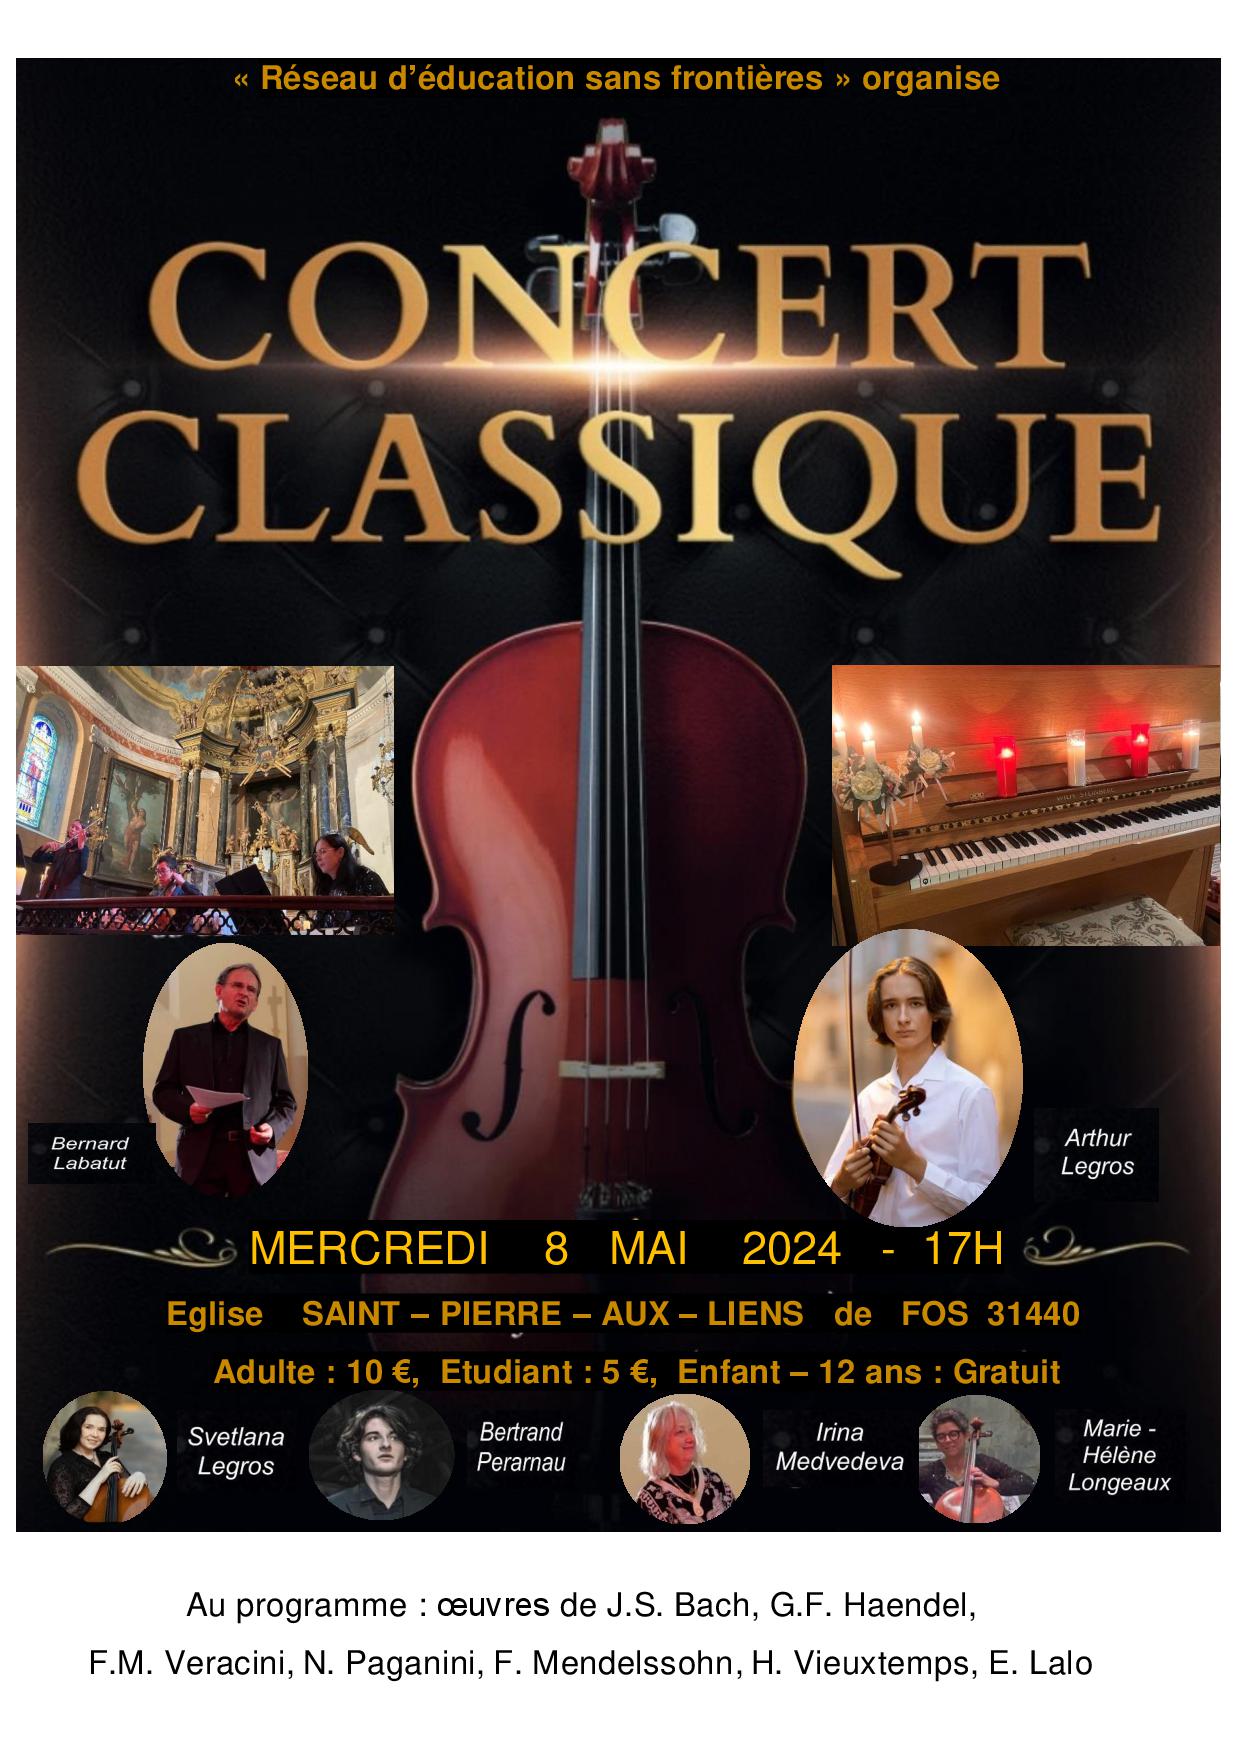 Mercredi 8 mai / Concert de musique classique à FOS en soutien à RESF